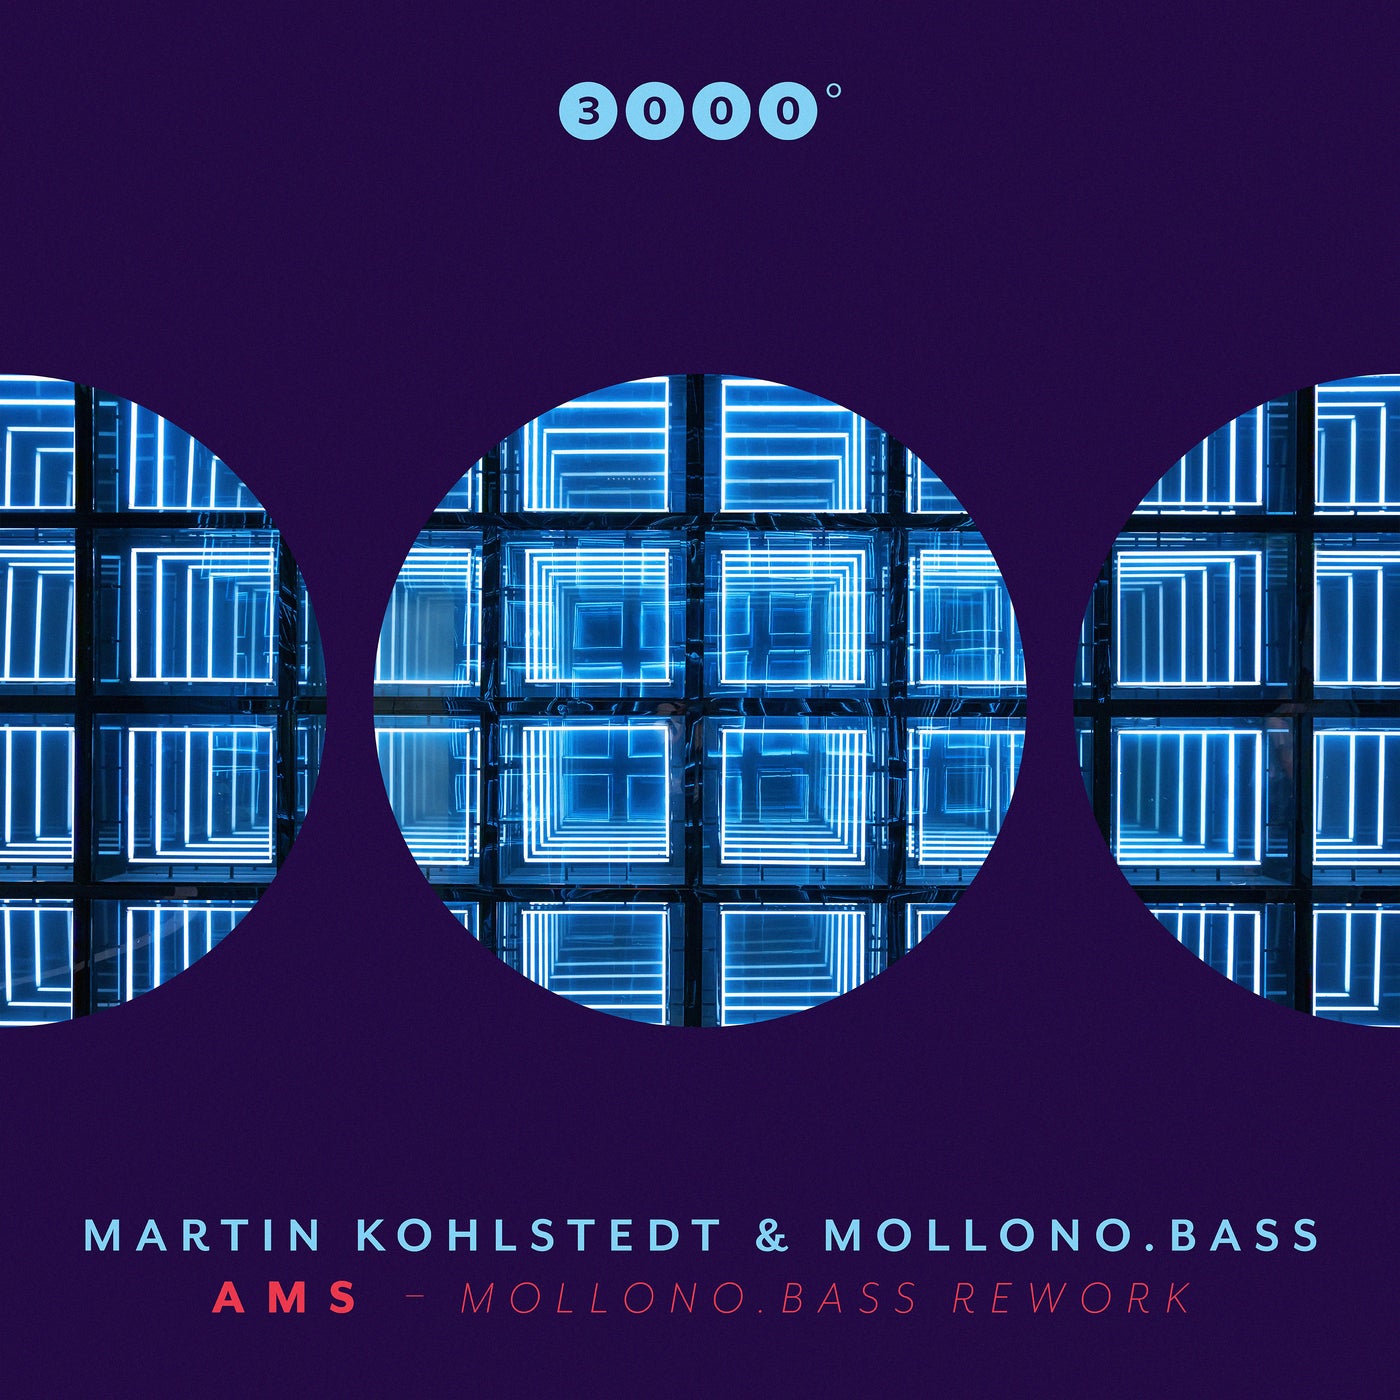 AMS (Mollono.Bass Rework)